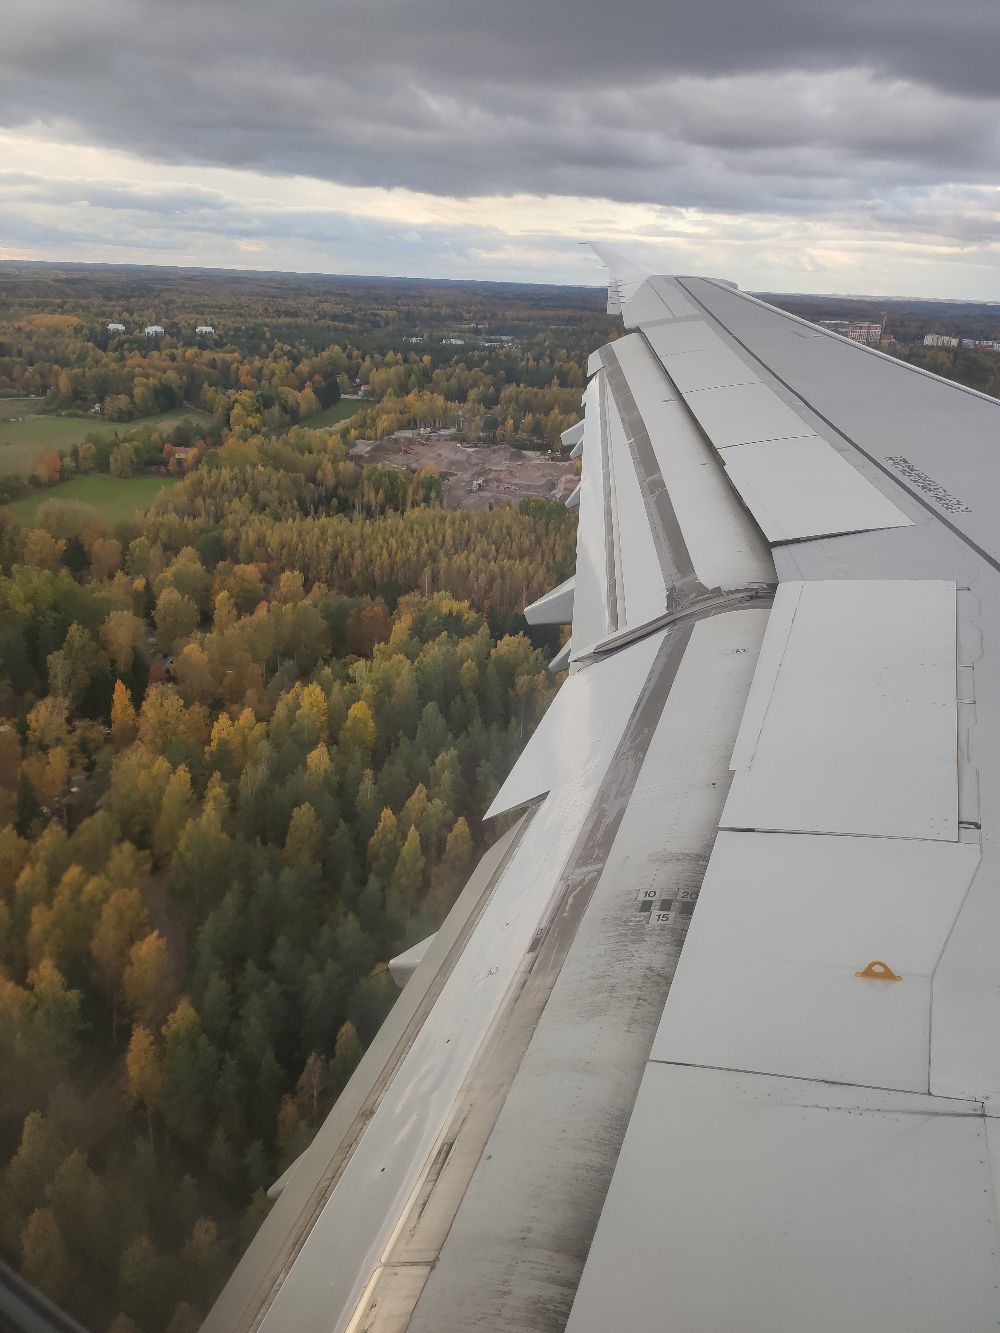 从芬兰赫尔辛基中转，与芬兰有过一面之缘，从飞机上看到赫尔辛基丰富的植被，就知道这里的环境保护还是做得